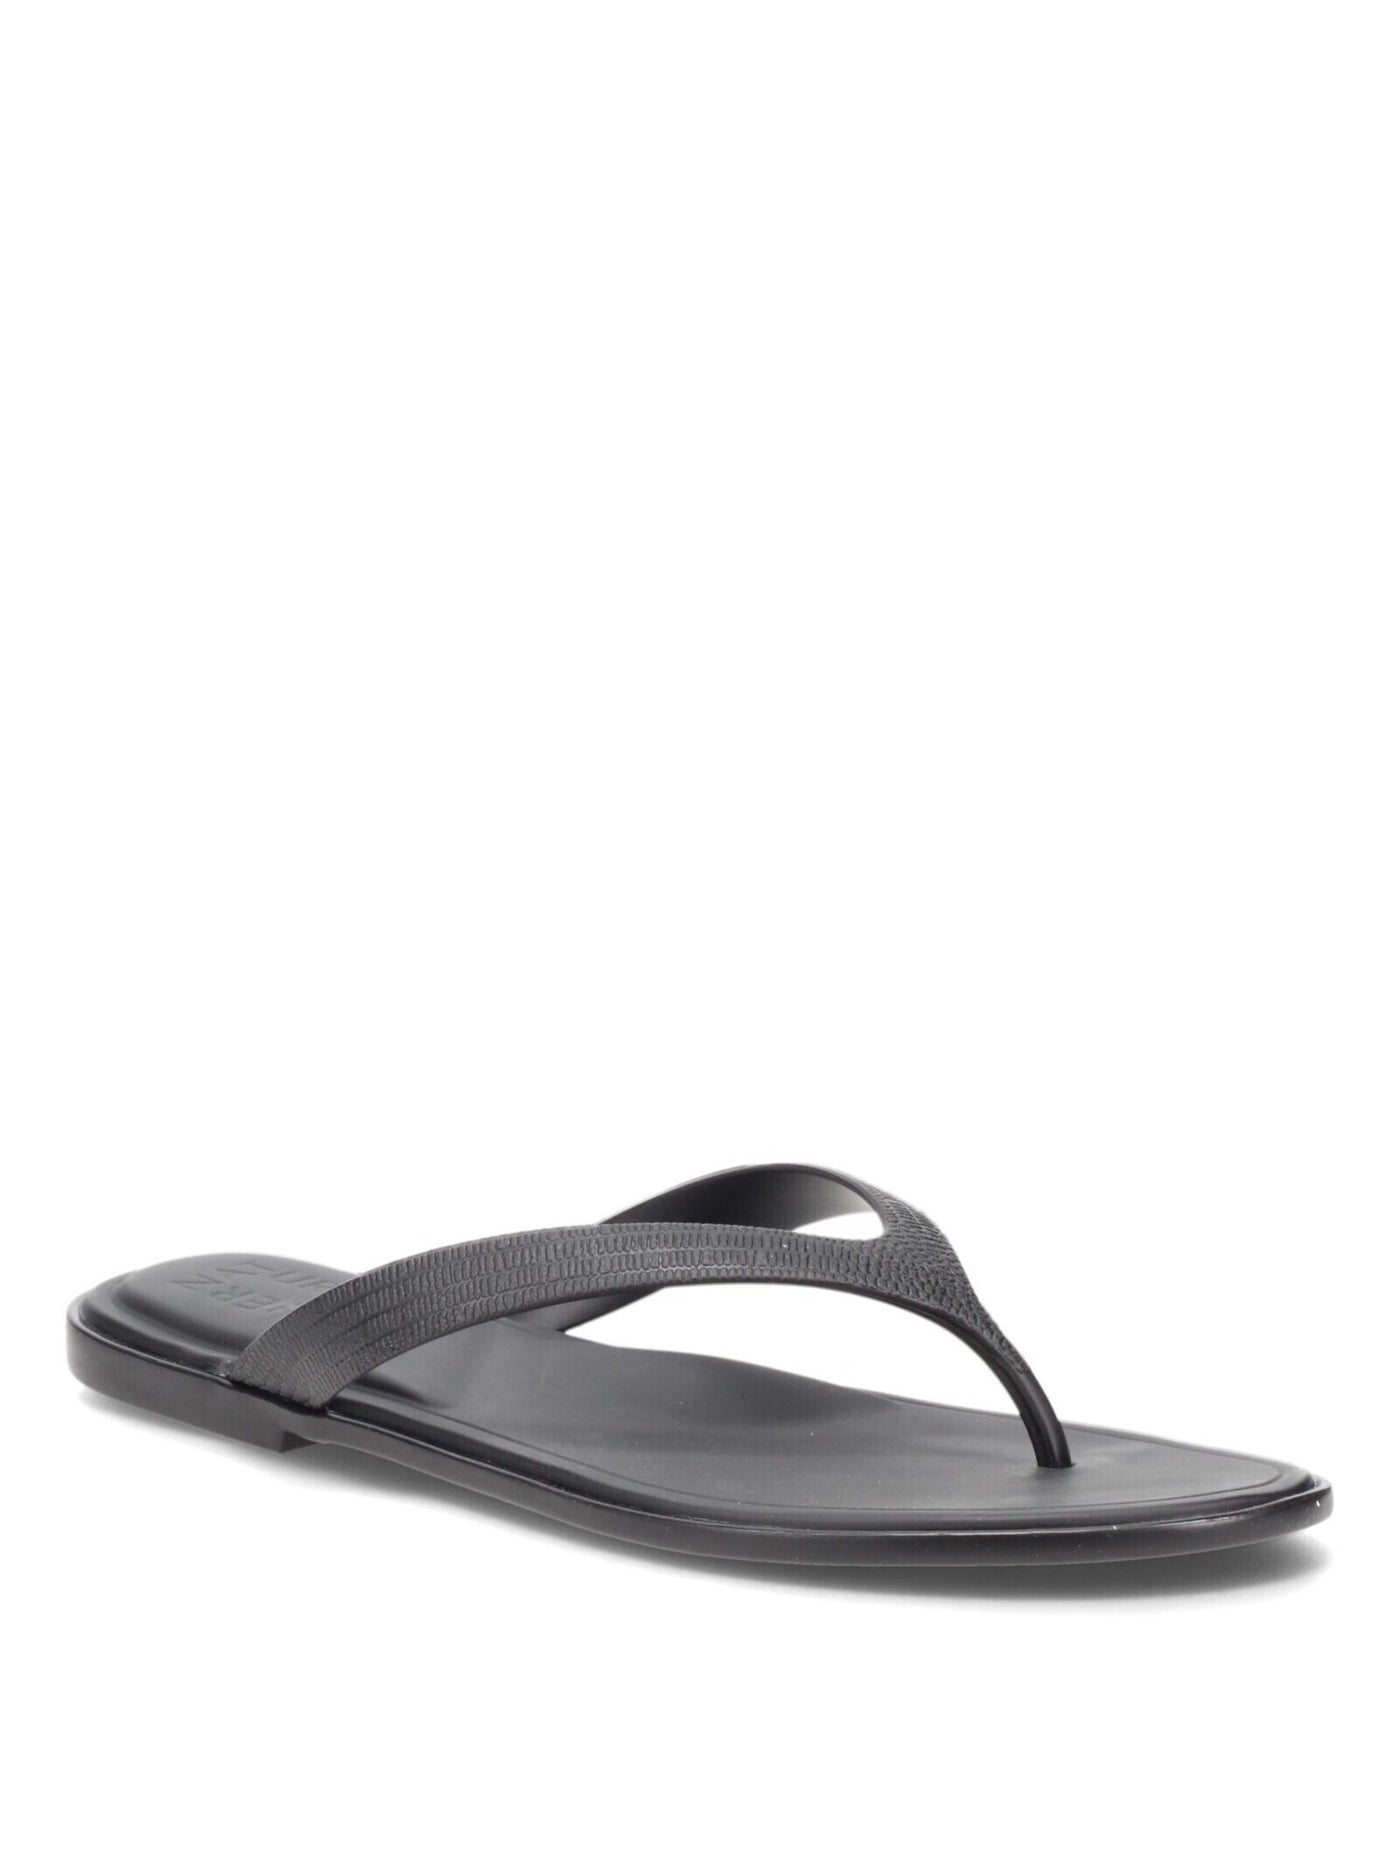 NANETTE LEPORE Womens Black Padded Non-Slip Jemm Round Toe Slip On Thong Sandals 9.5 M